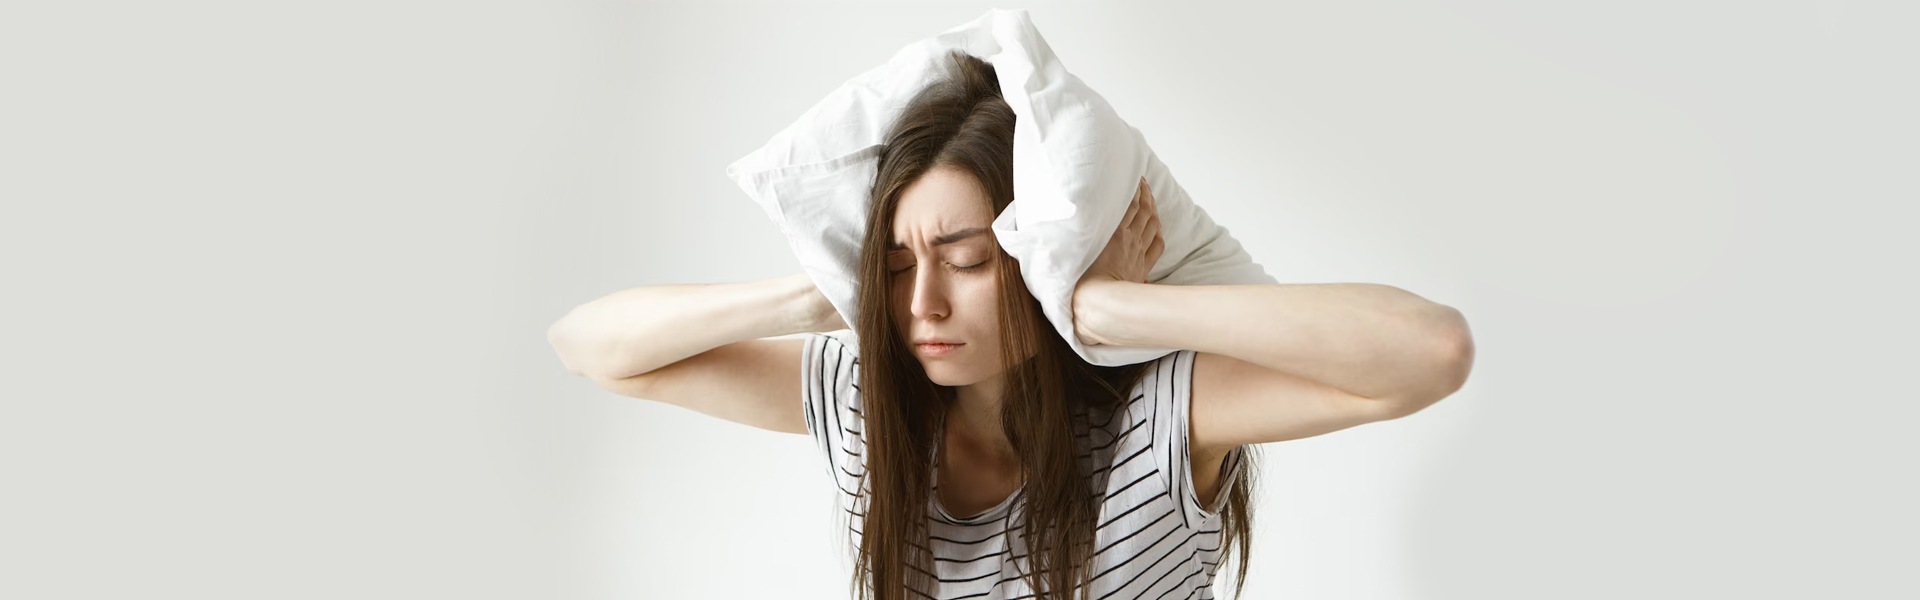 Can Obstructive Sleep Apnea Be Cured?